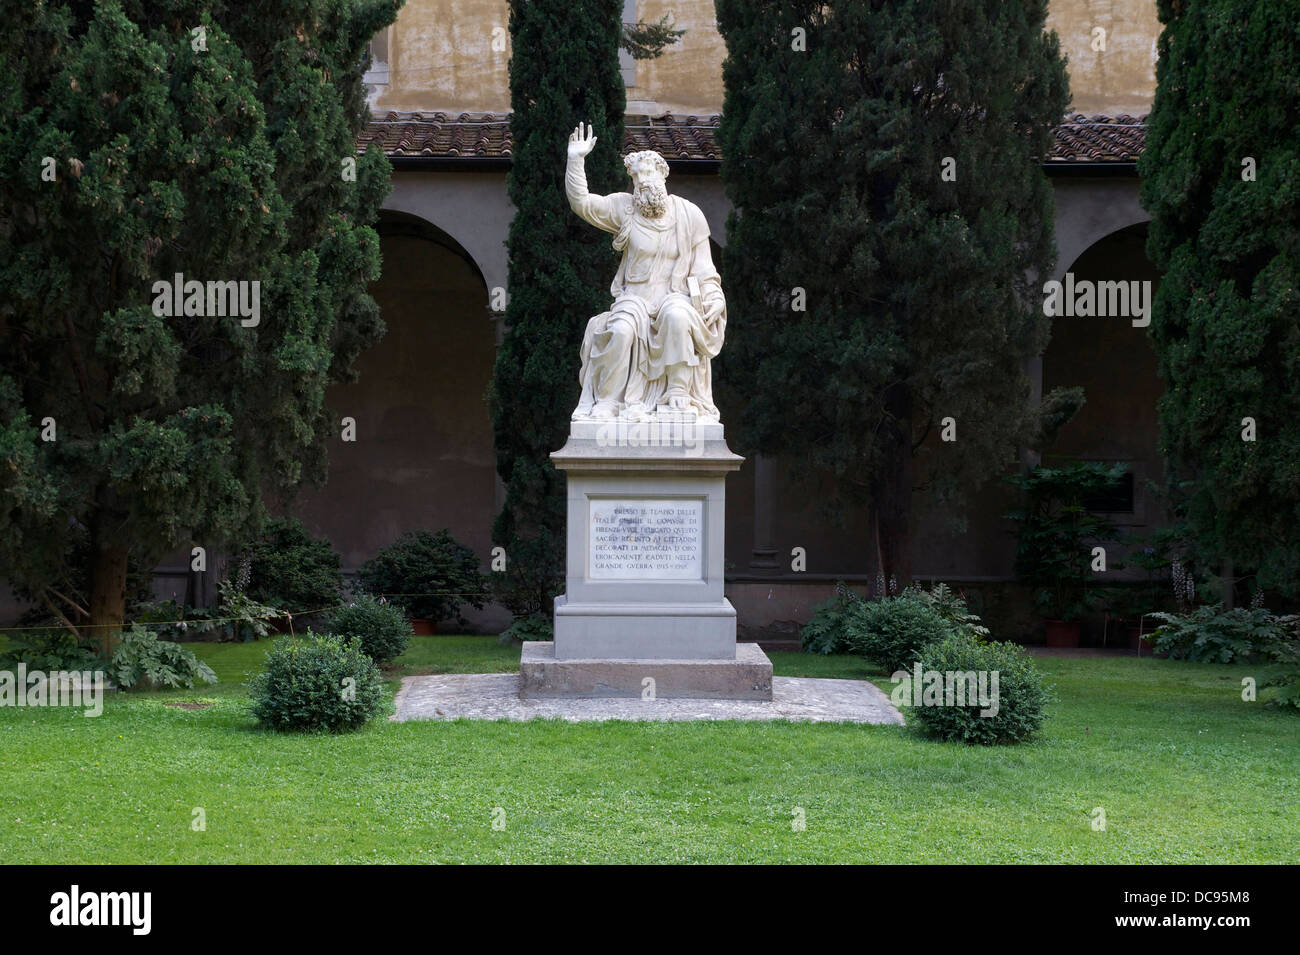 Ein Denkmal an die Florentiner während des 1. Weltkrieges gefallen. Gott der Vater, nach Bandinelli. Kloster Santa Croce, Florenz, Italien. Stockfoto